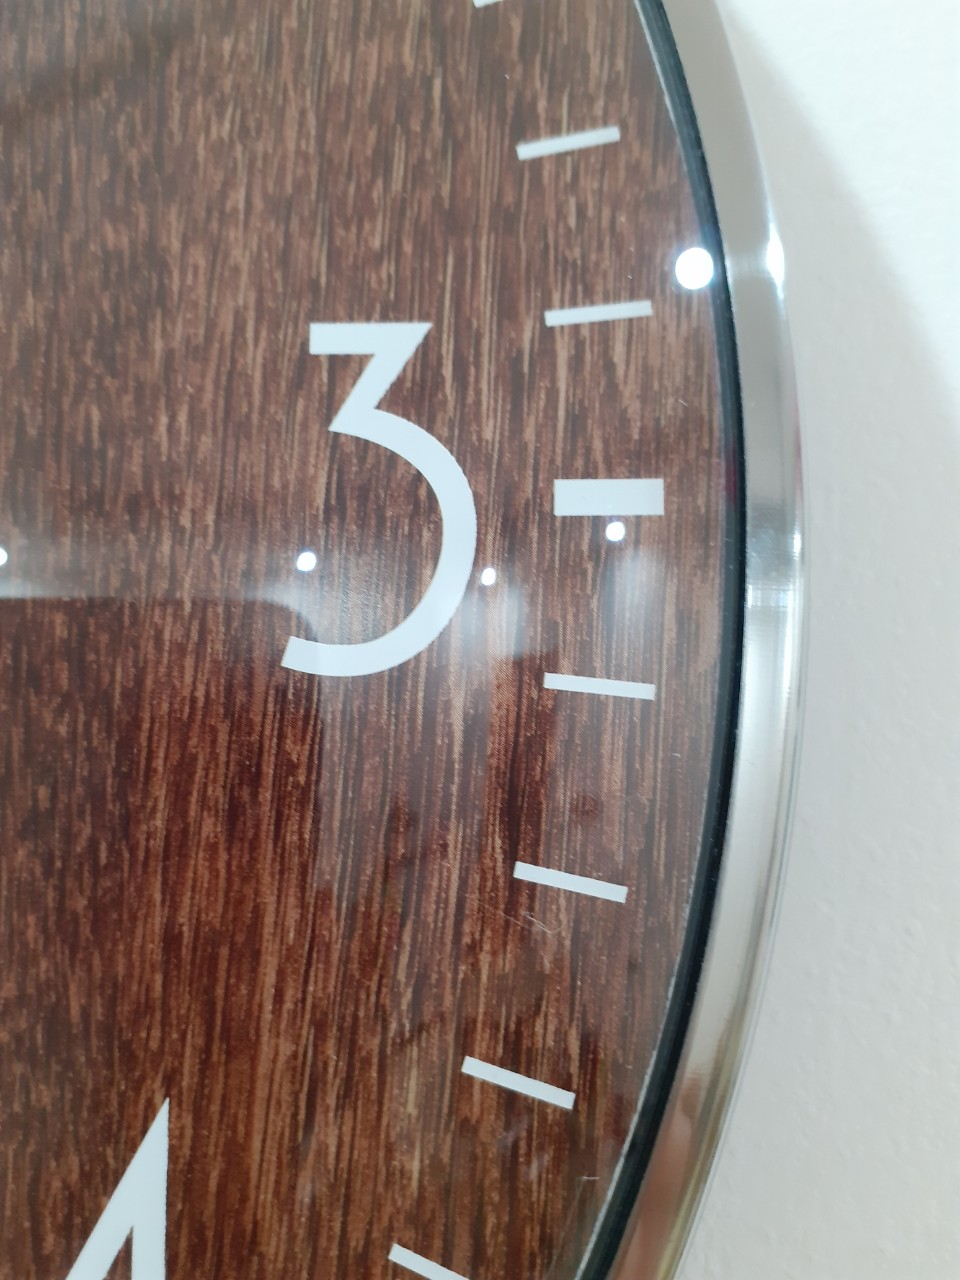 Đồng hồ treo tường vân gỗ - khung kim loại sang trọng - HÀNG LOẠI 1